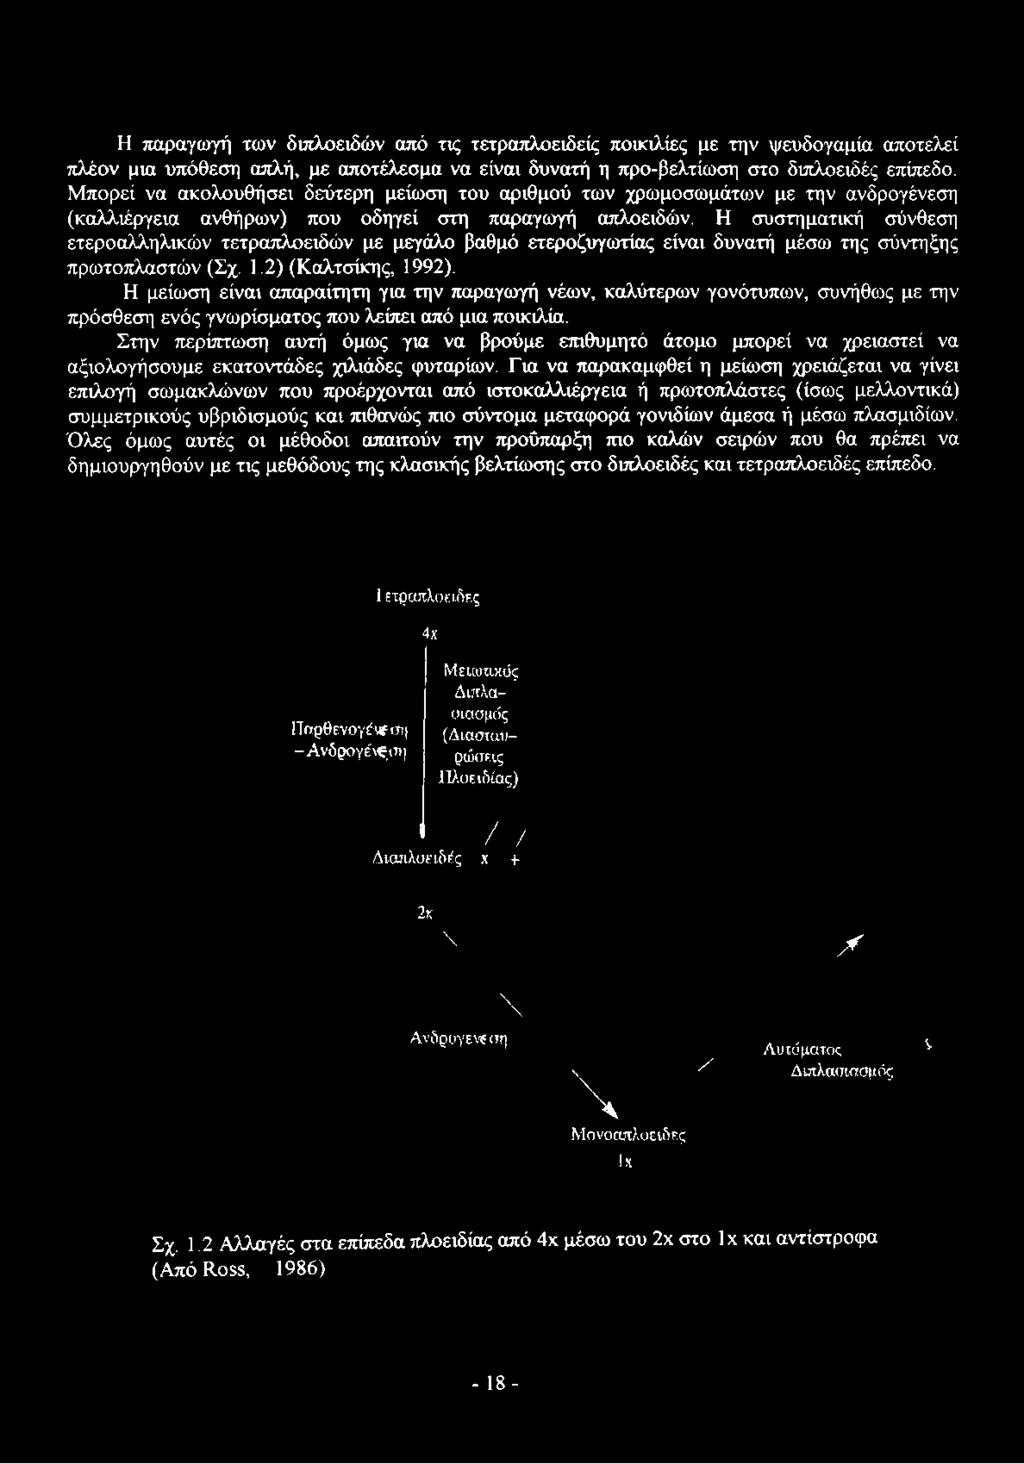 Η συστηματική σύνθεση ετεροαλληλικών τετραπλοειδών με μεγάλο βαθμό ετεροζυγωτίας είναι δυνατή μέσω της σύντηξης πρωτοπλαστών (Σχ. 1.2) (Καλτσίκης, 1992).